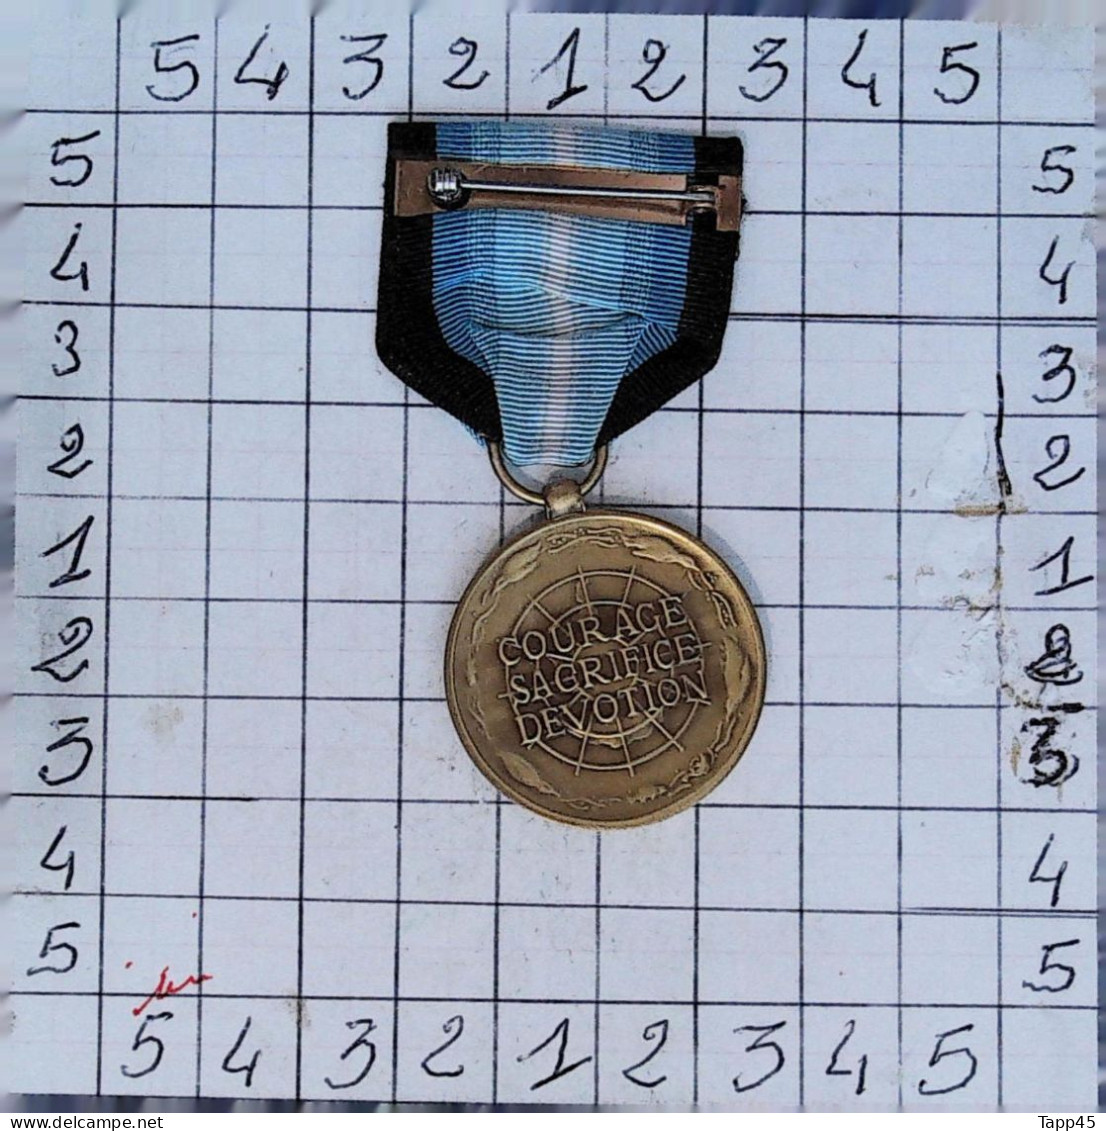 Médailles  > Dispersion d'une collection vendu au prix achetée >Antarctica Service Medal > Réf:Cl USA P 8/ 3